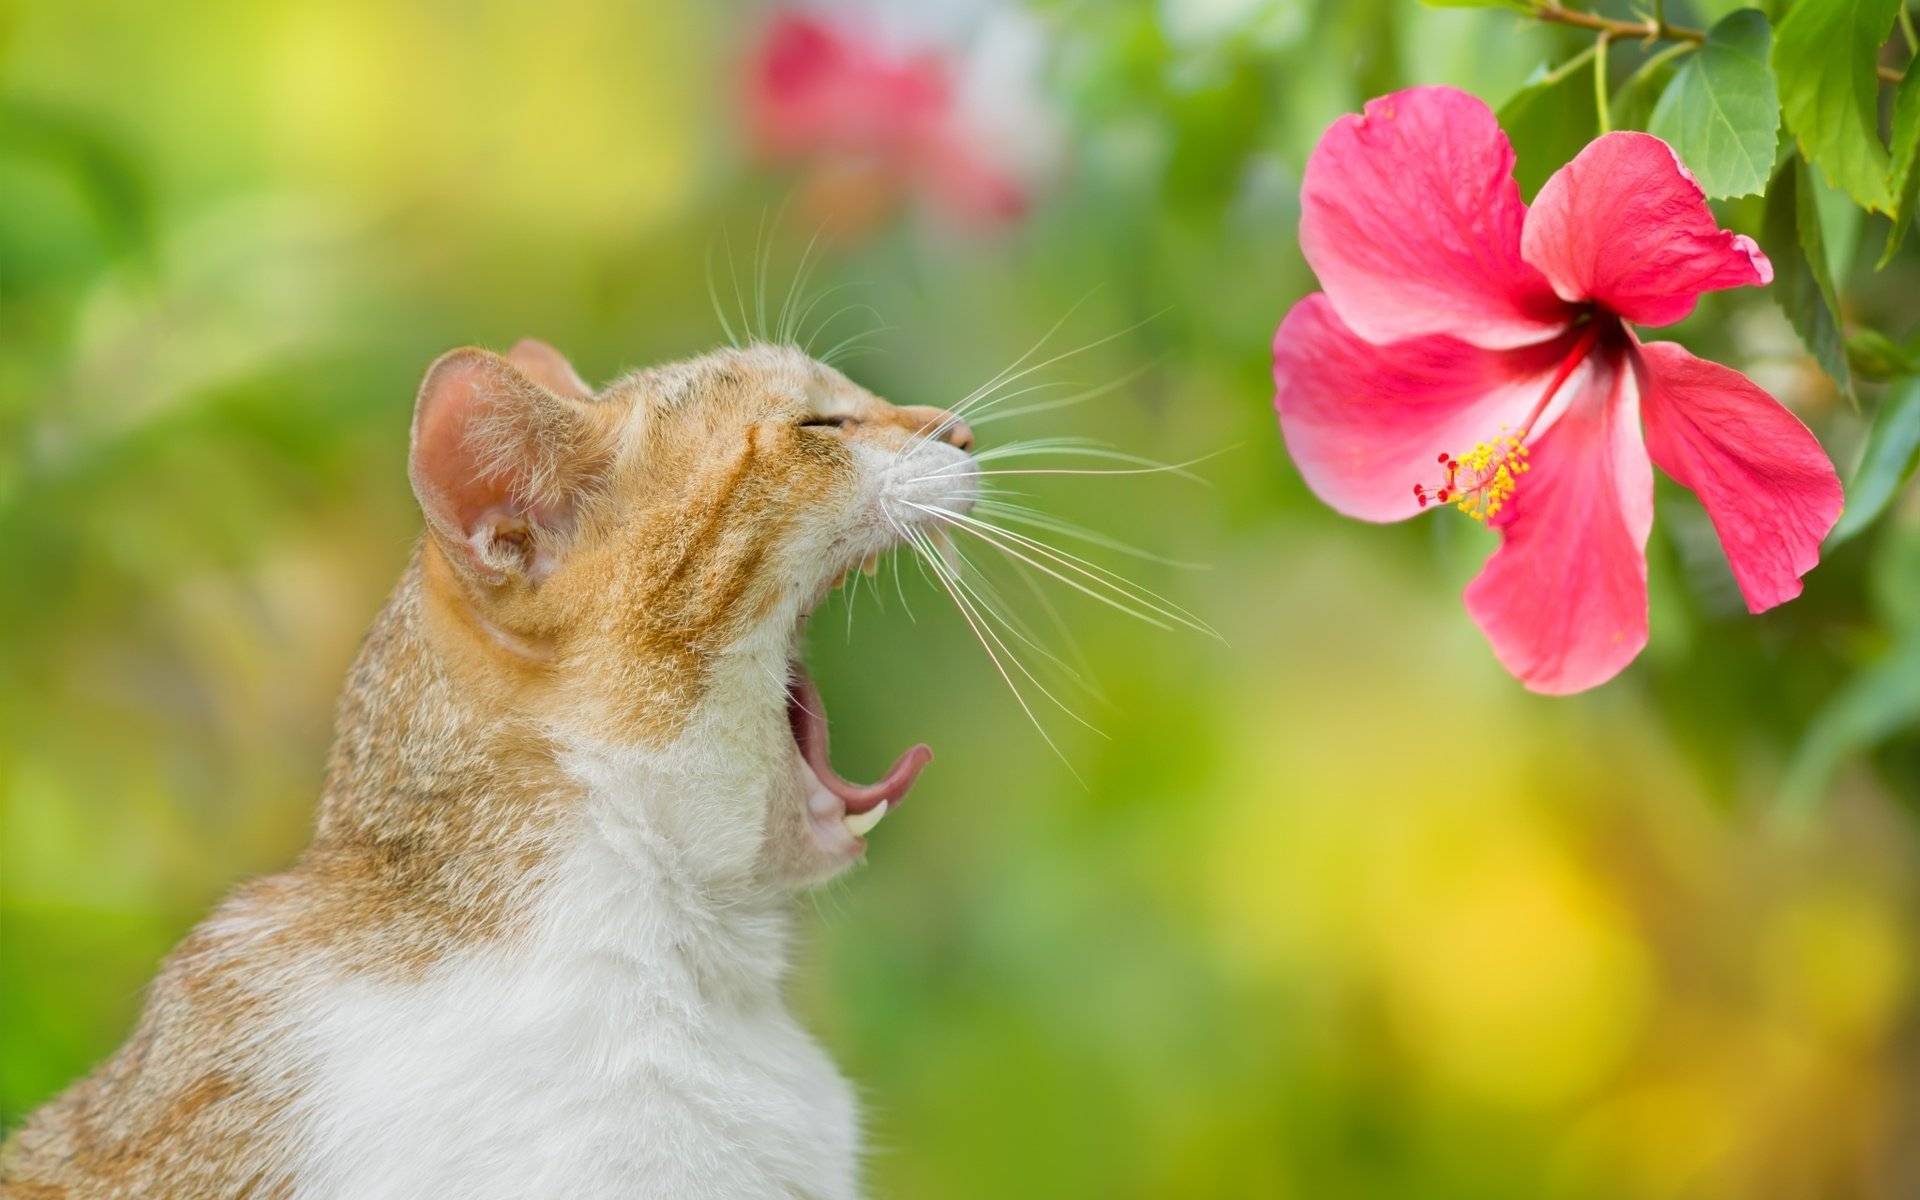 Почему кошка может чихать